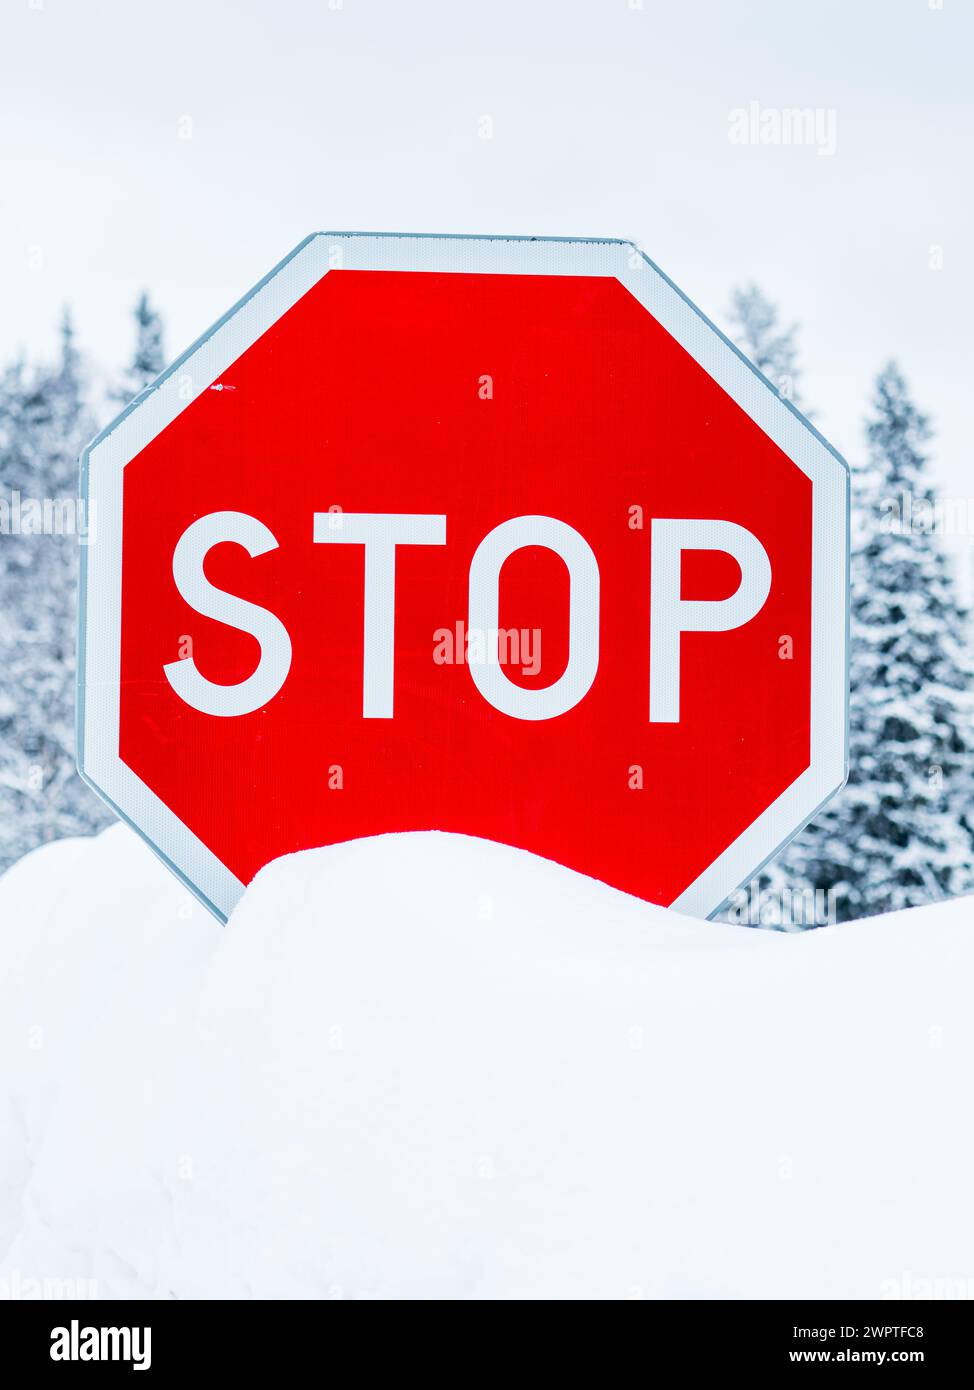 Ein rotes Stoppschild hebt sich vom weißen, schneebedeckten Boden darunter ab und erzeugt einen starken Kontrast. Die Winterlandschaft verstärkt die Visi Stockfoto